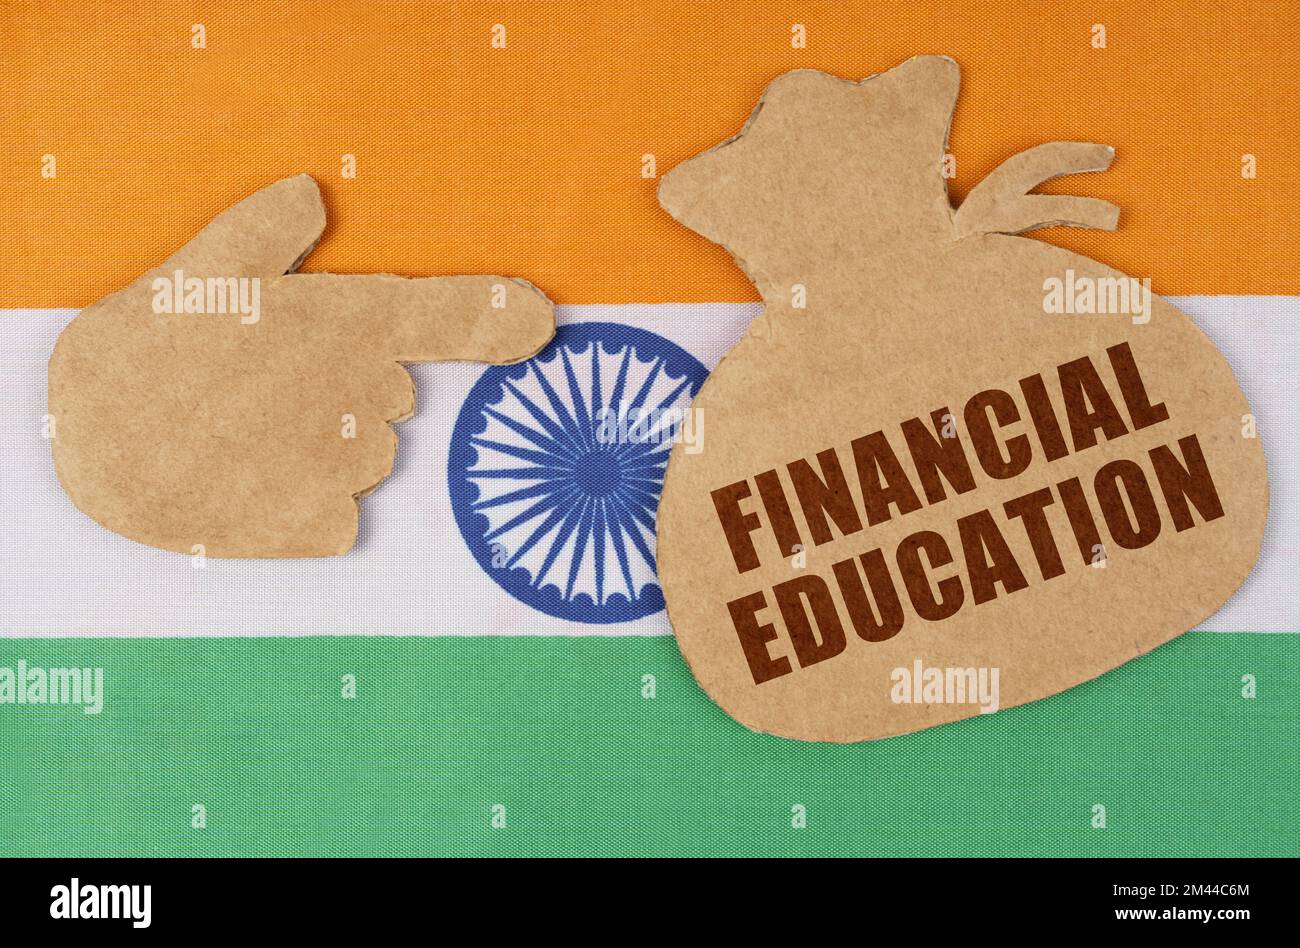 Der Begriff Volkswirtschaft und Wirtschaft. Auf der indischen Flagge, Pappfiguren einer Hand und einer Geldtasche mit der Aufschrift "FINANCIAL EDUCA" Stockfoto